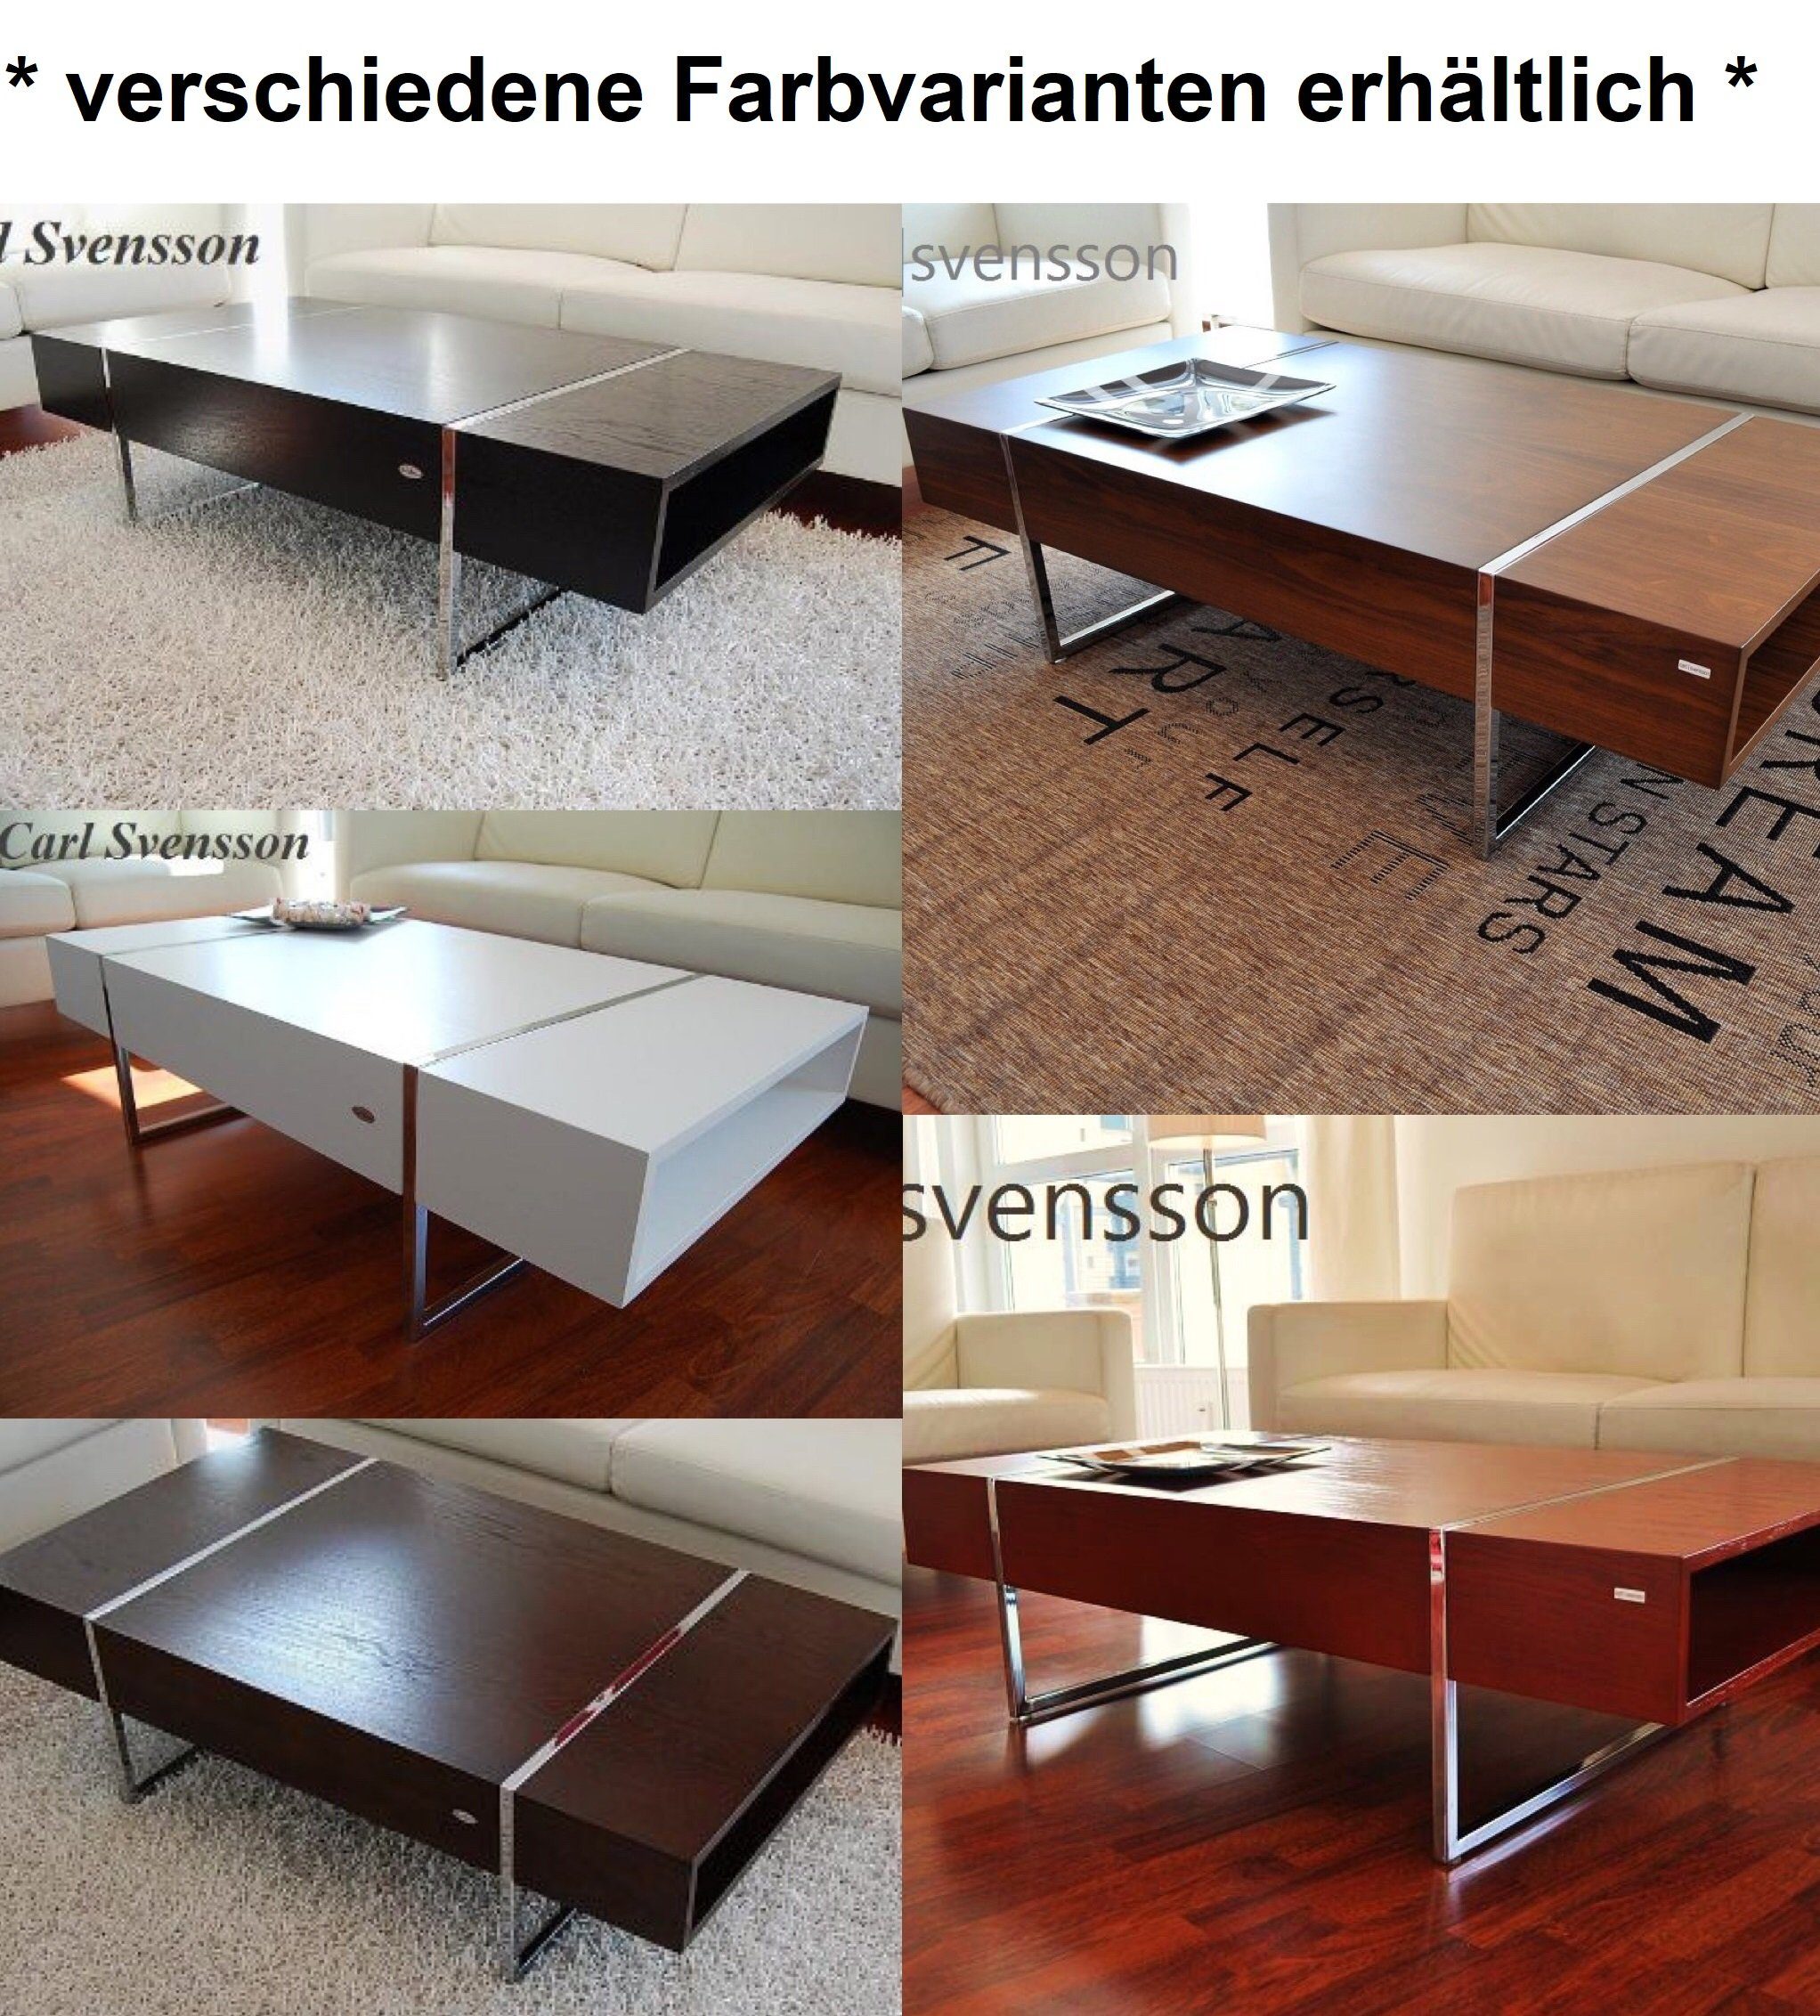 Design Tisch svensson Carl Schwarz Svensson carl N-111 Chrom Couchtisch Couchtisch